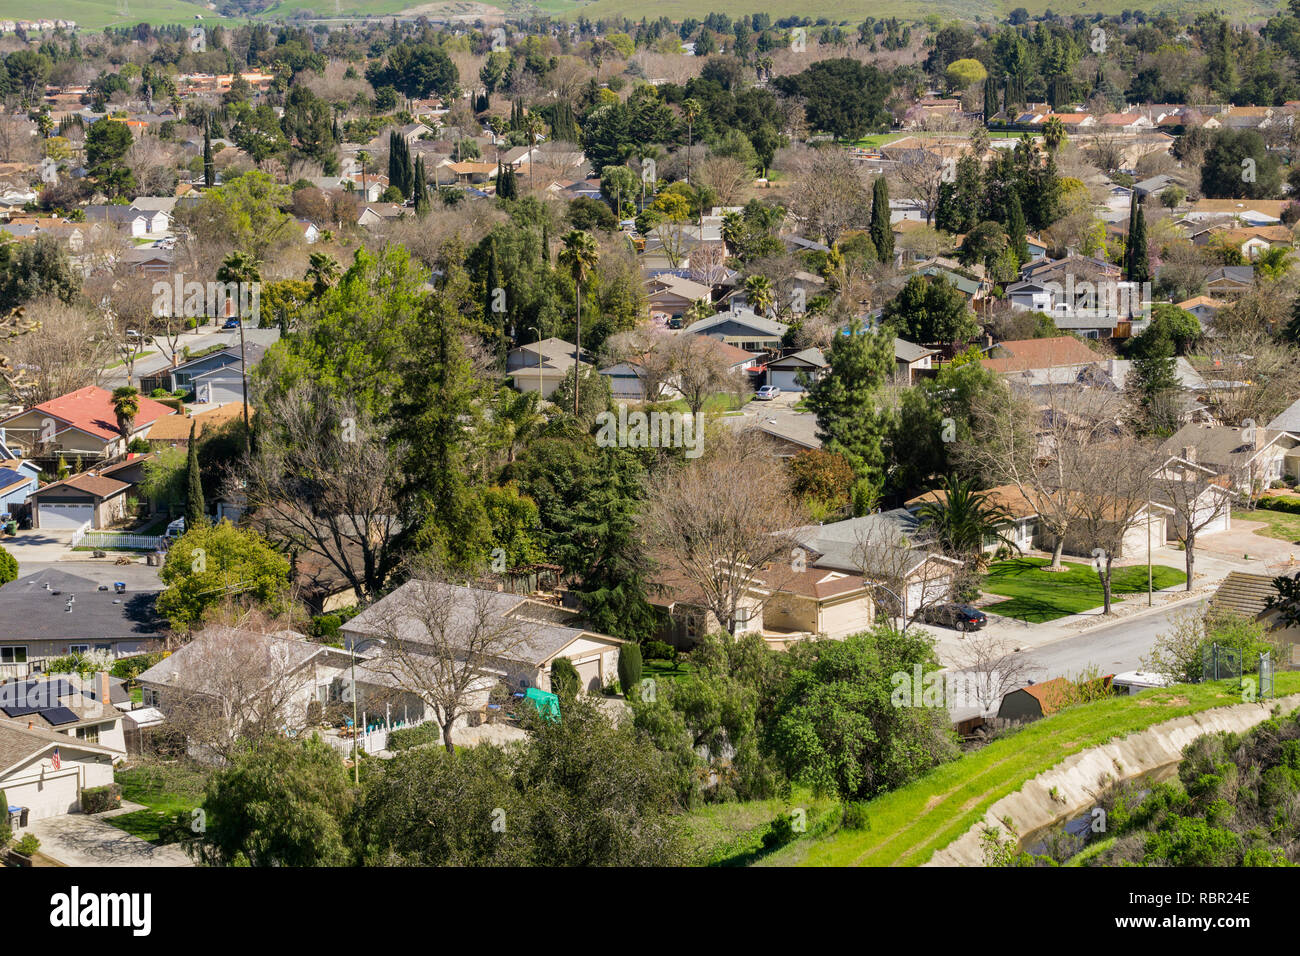 Vista aerea del quartiere residenziale di San Jose, South San Francisco Bay, California Foto Stock